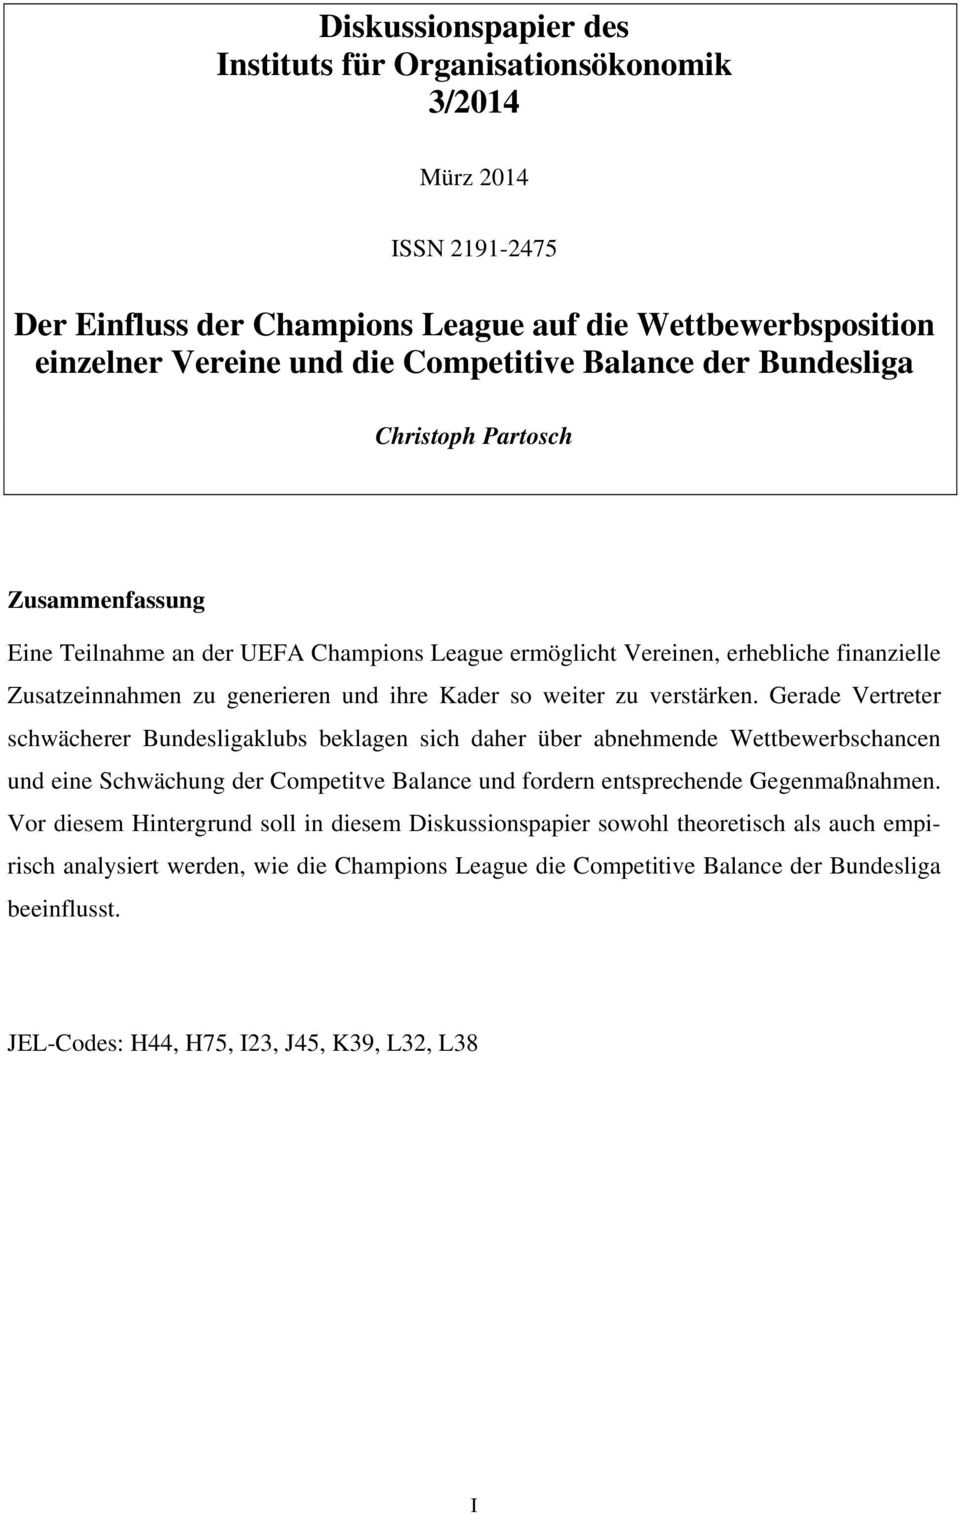 verstärken. Gerade Vertreter schwächerer Bundesligaklubs beklagen sich daher über abnehmende Wettbewerbschancen und eine Schwächung der Competitve Balance und fordern entsprechende Gegenmaßnahmen.